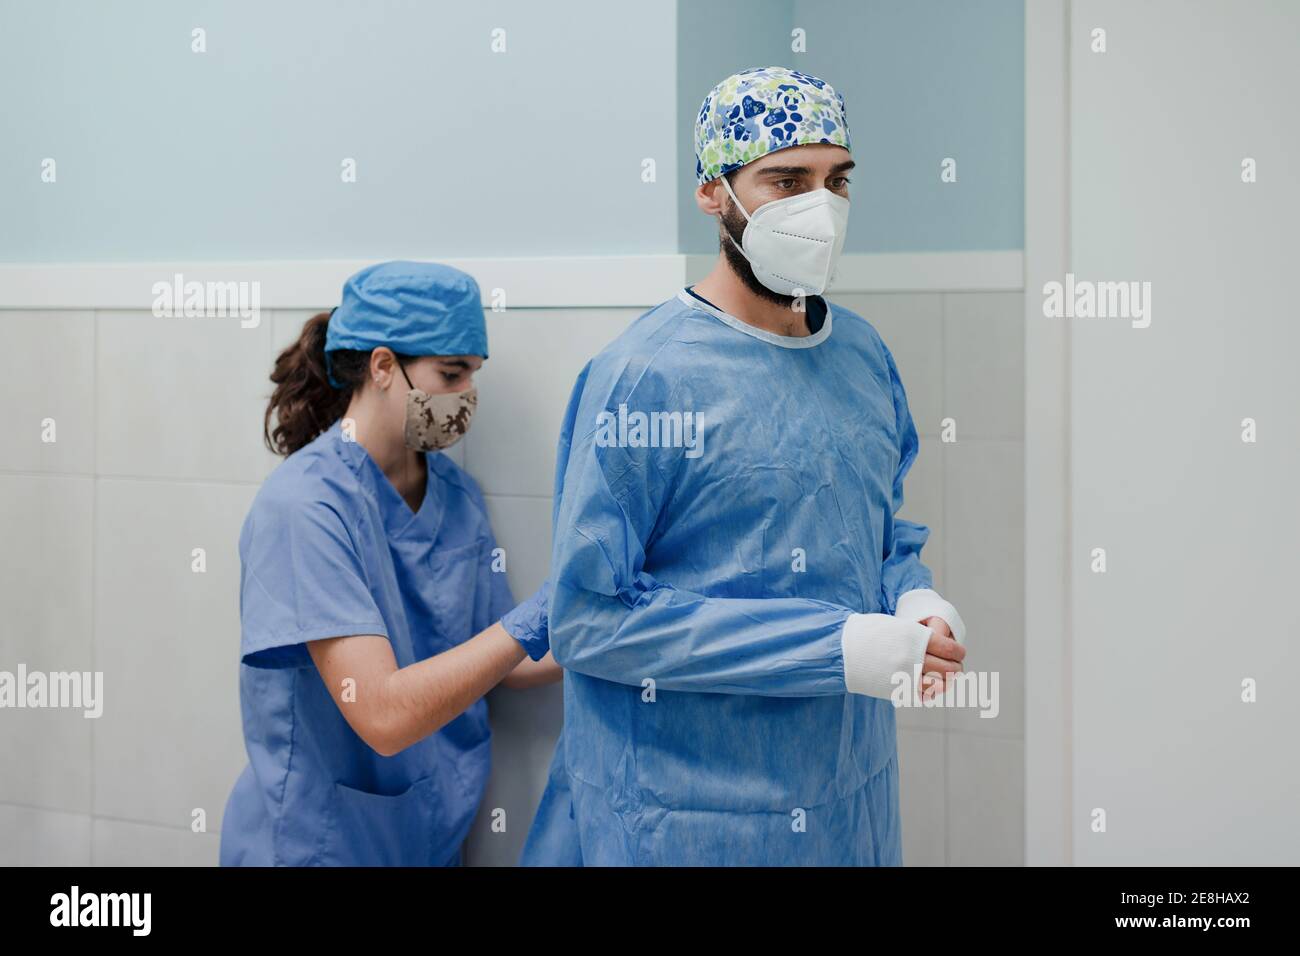 Infirmière féminine non reconnaissable, portant un uniforme stérile sur un homme médic In masque respiratoire avant la chirurgie à l'hôpital Banque D'Images